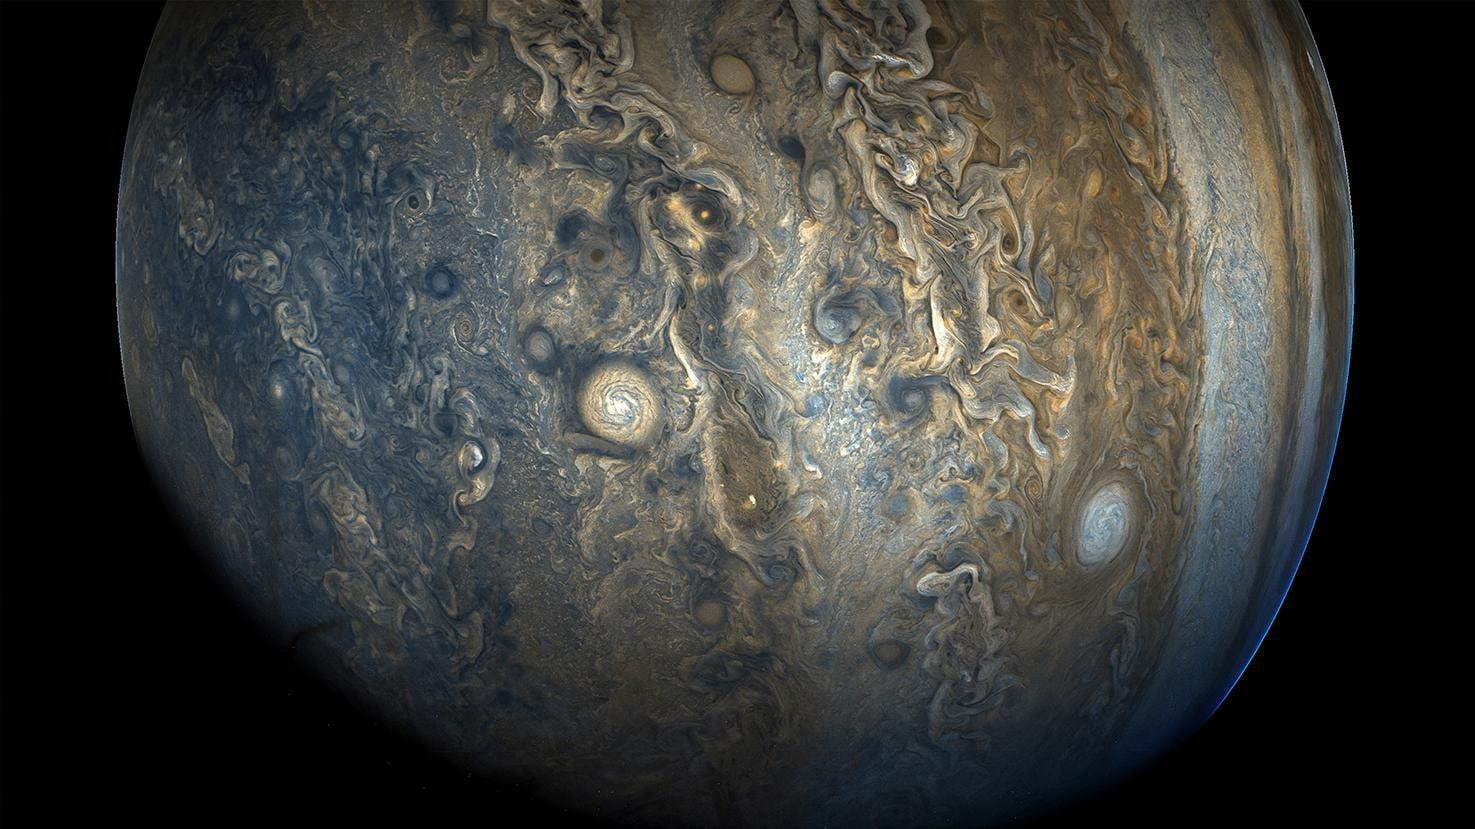 木星の南半球の嵐と雲
木星探査機ジュノーによる観測
NASA/JPL-Caltech/SwRI/MSSS